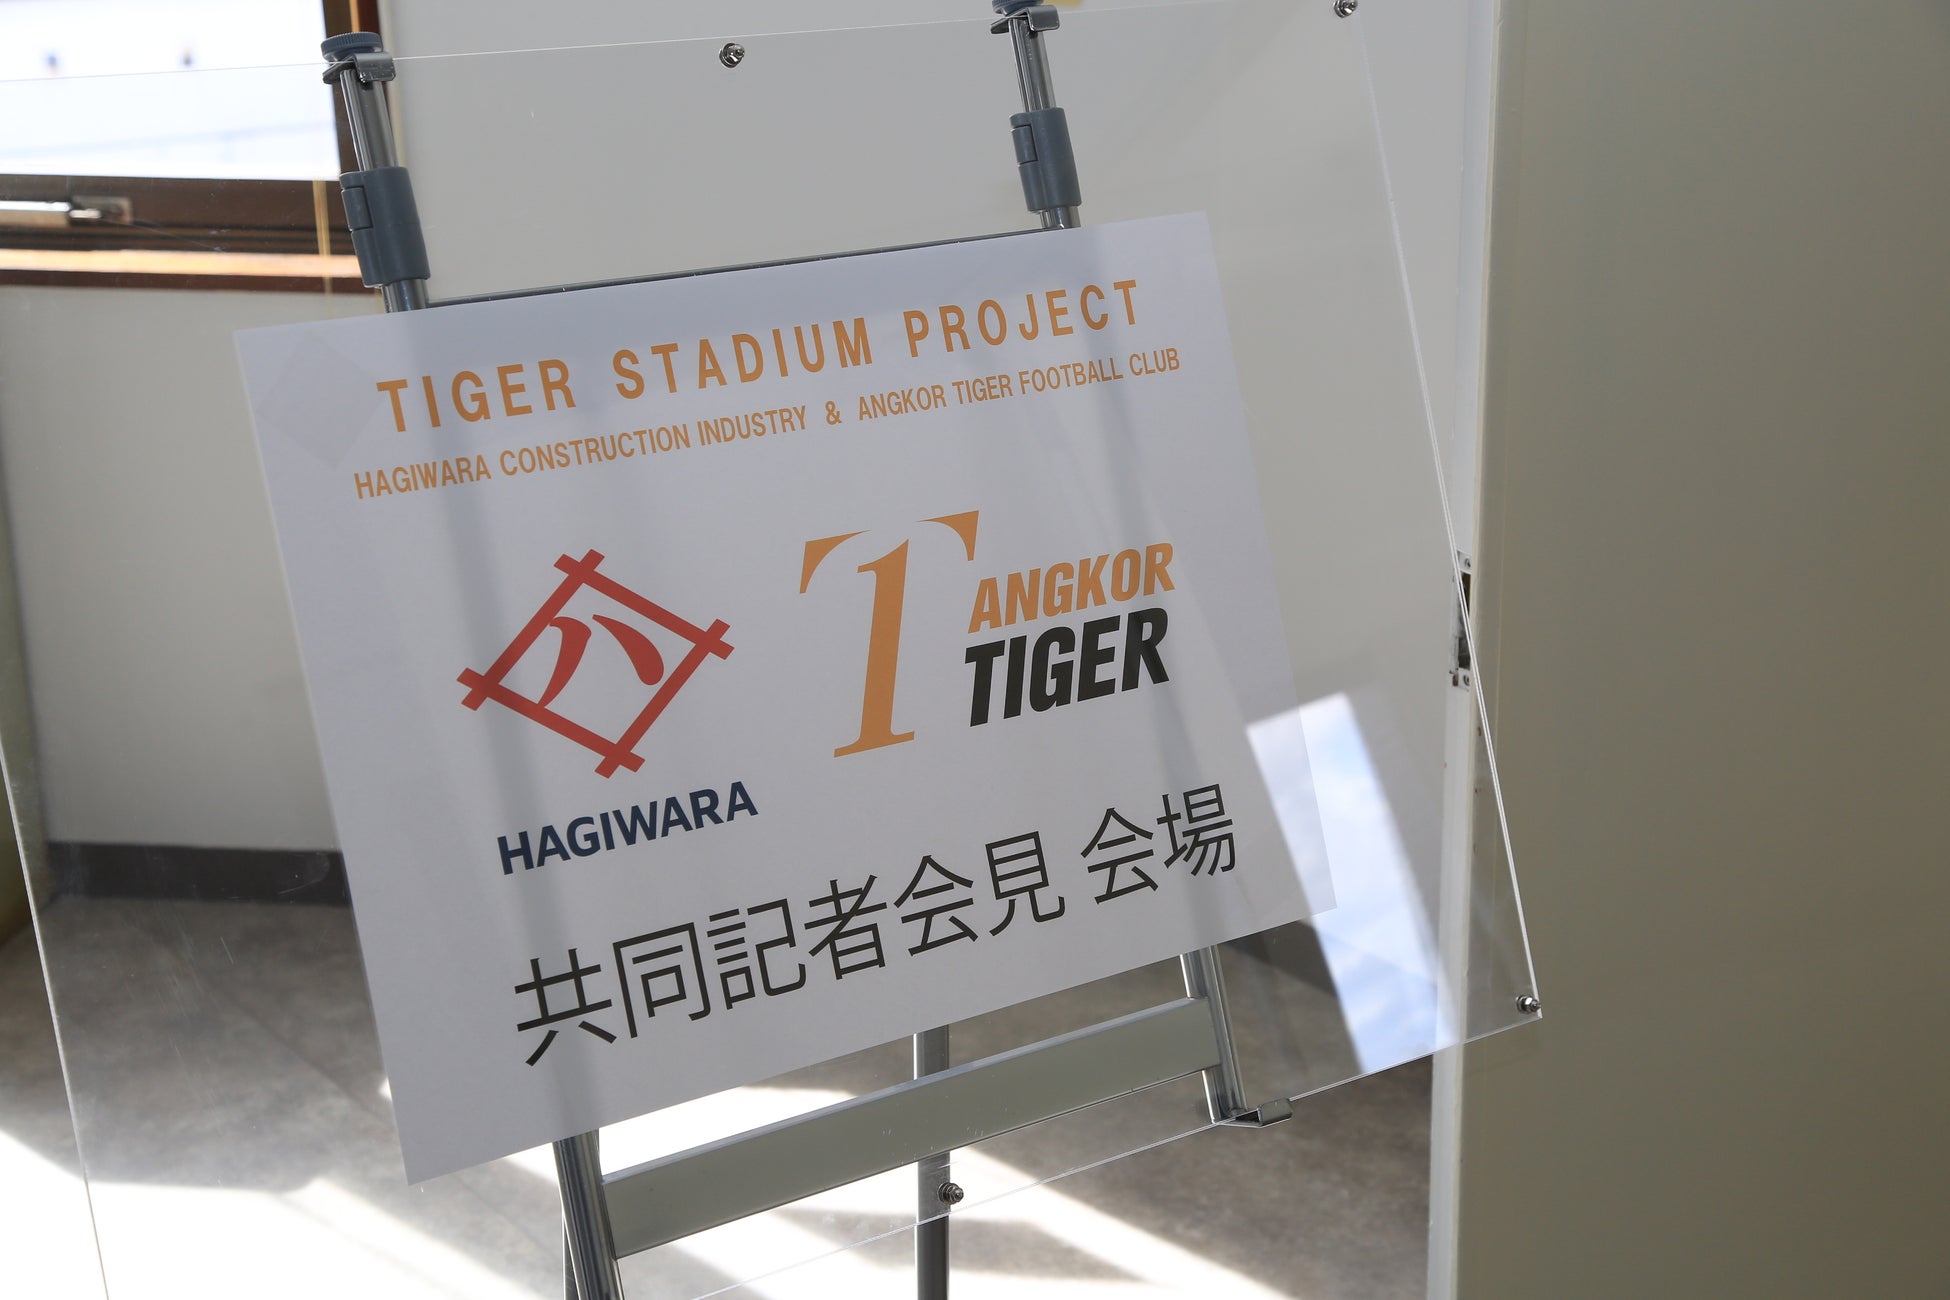 タイガースタジアム建設プロジェクト共同記者会見実施のお知らせ